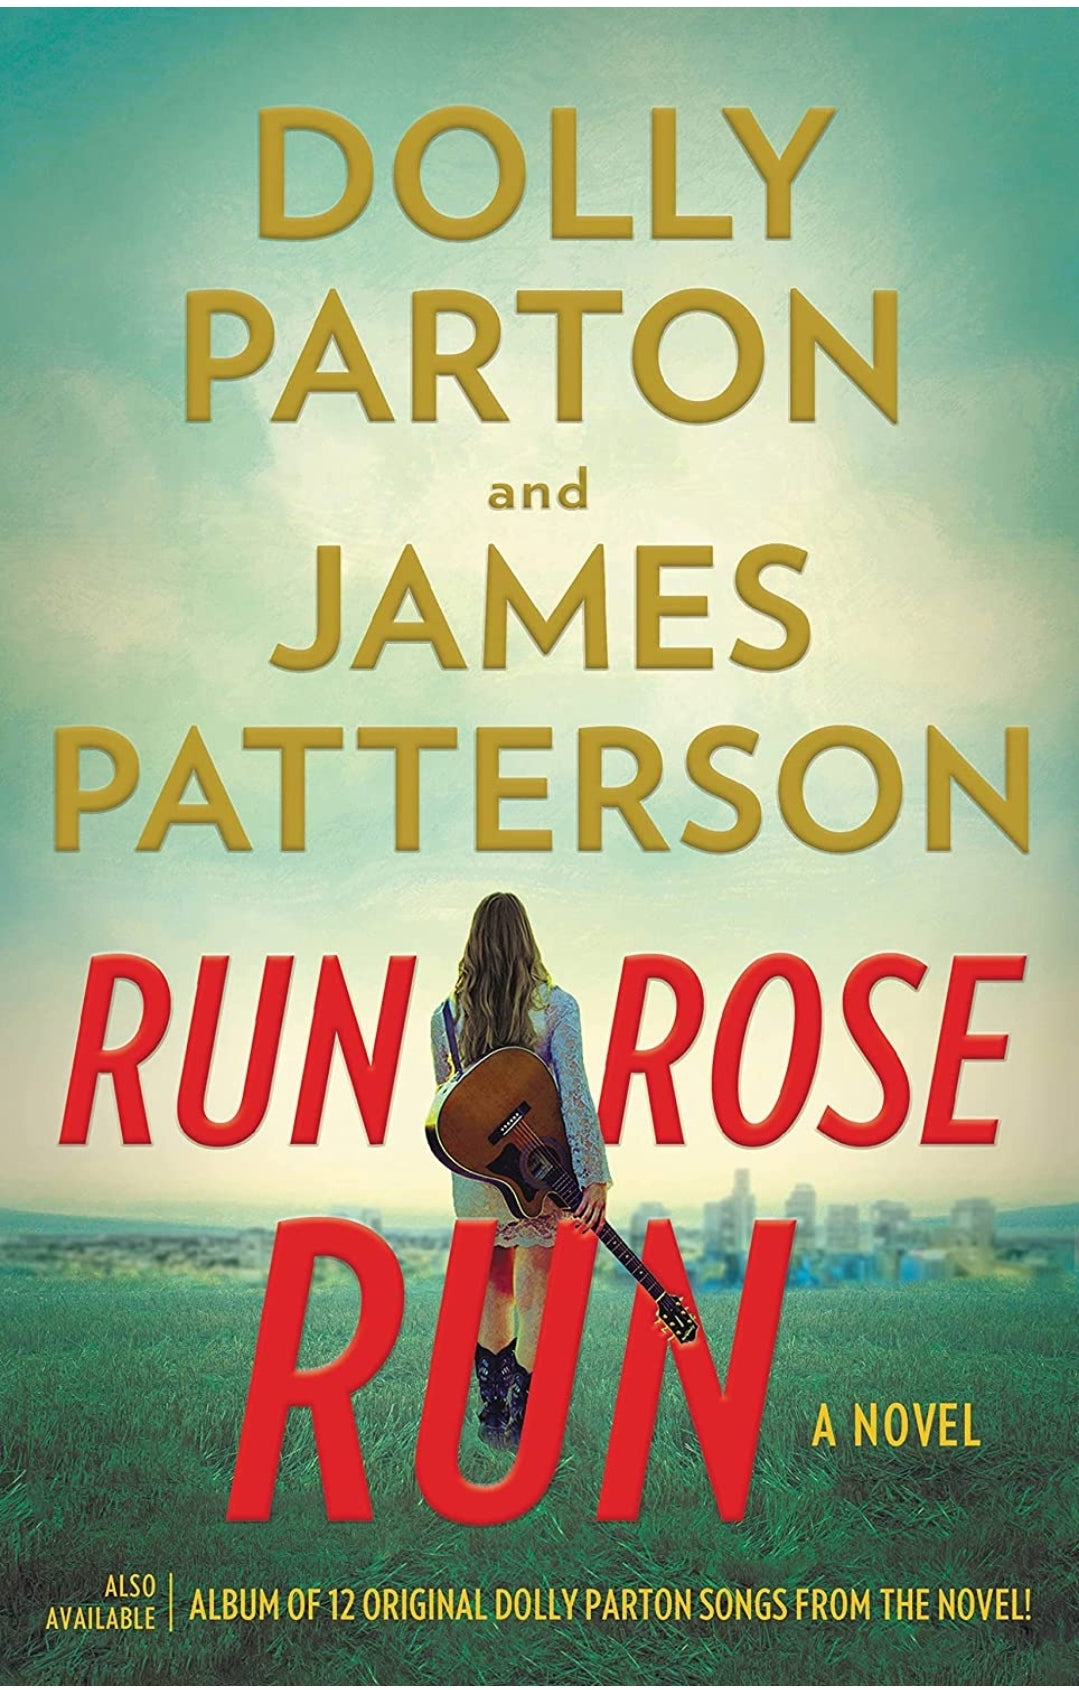 Run, Rose, Run: A Novel